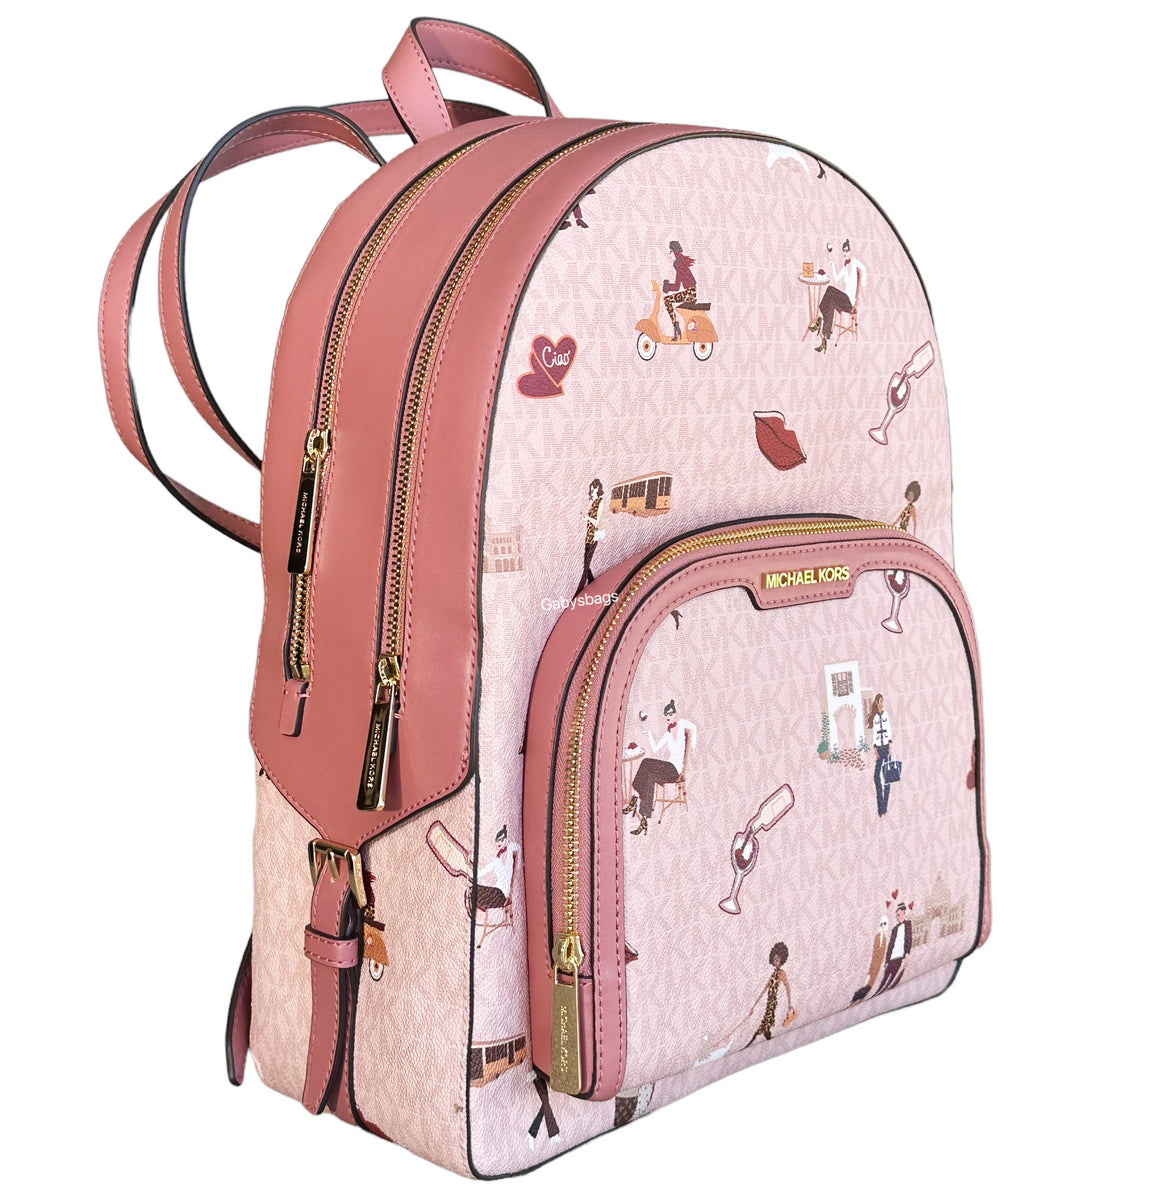 Michael Kors Jet Set Girls Jaycee Large Backpack Dark Powder Blush Pink MK